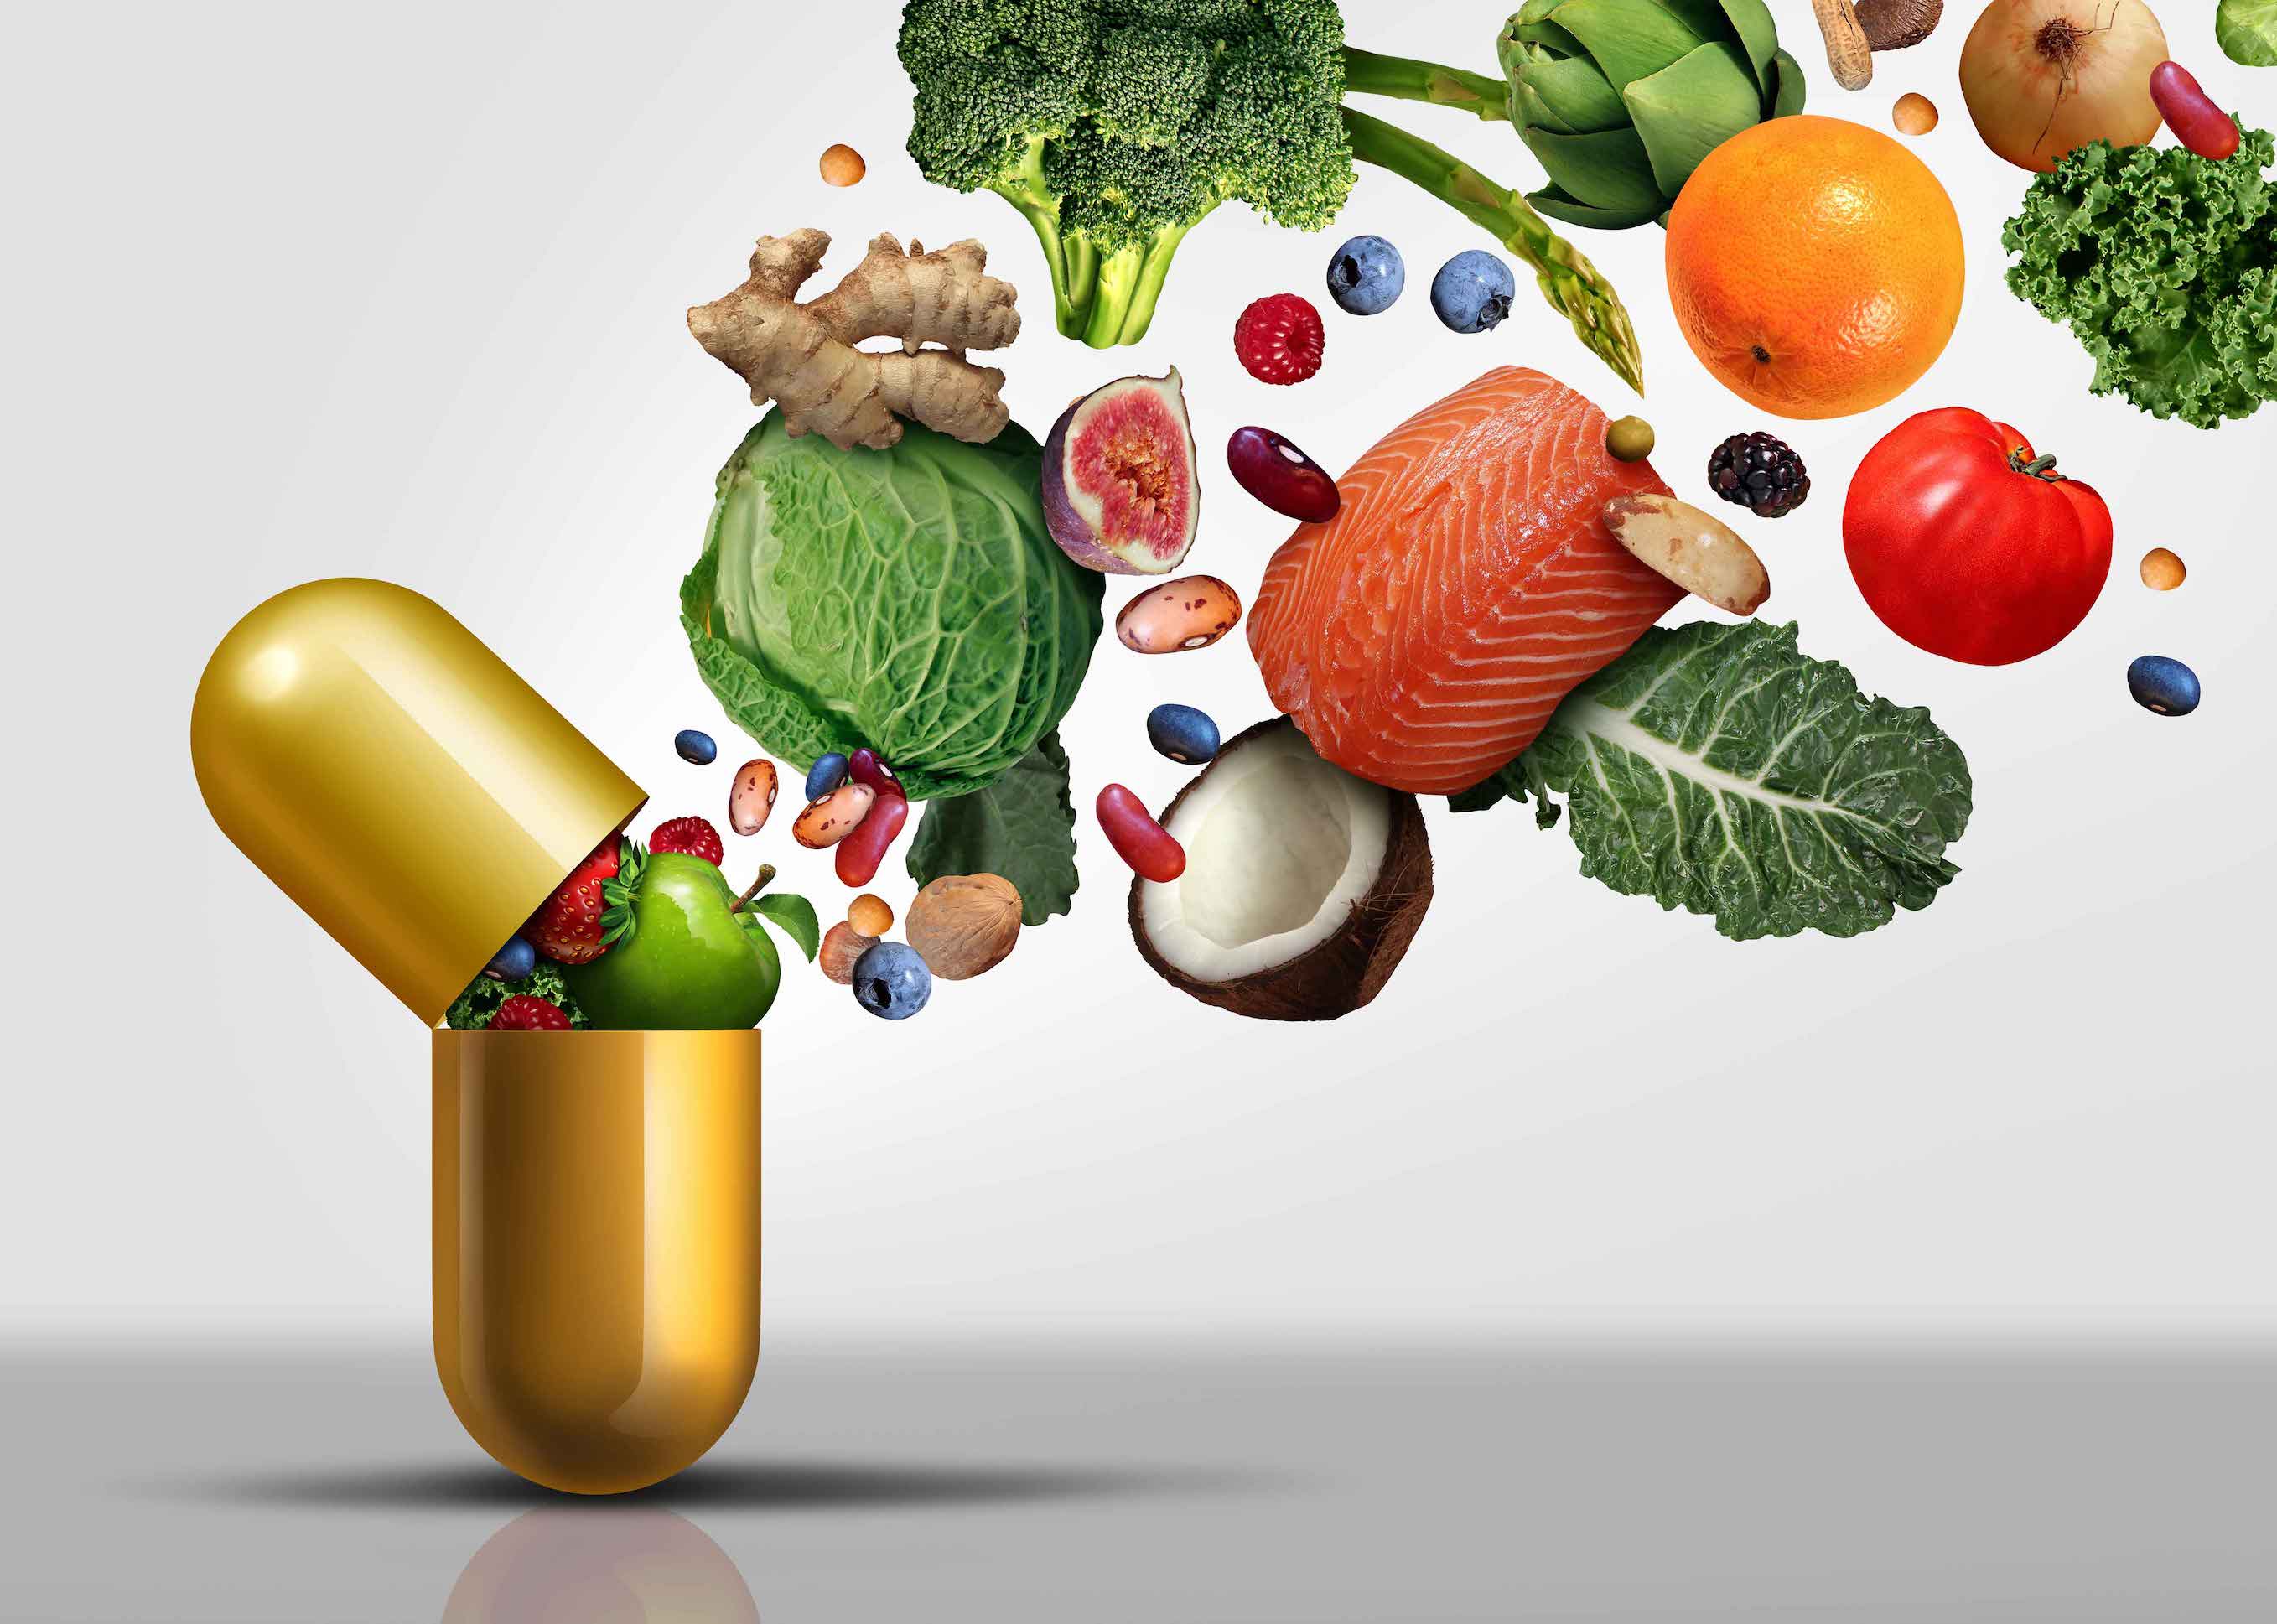 leeg Sanctie Haalbaarheid Voldoende vitamine D opnemen via voeding: kan dat? | Fultium